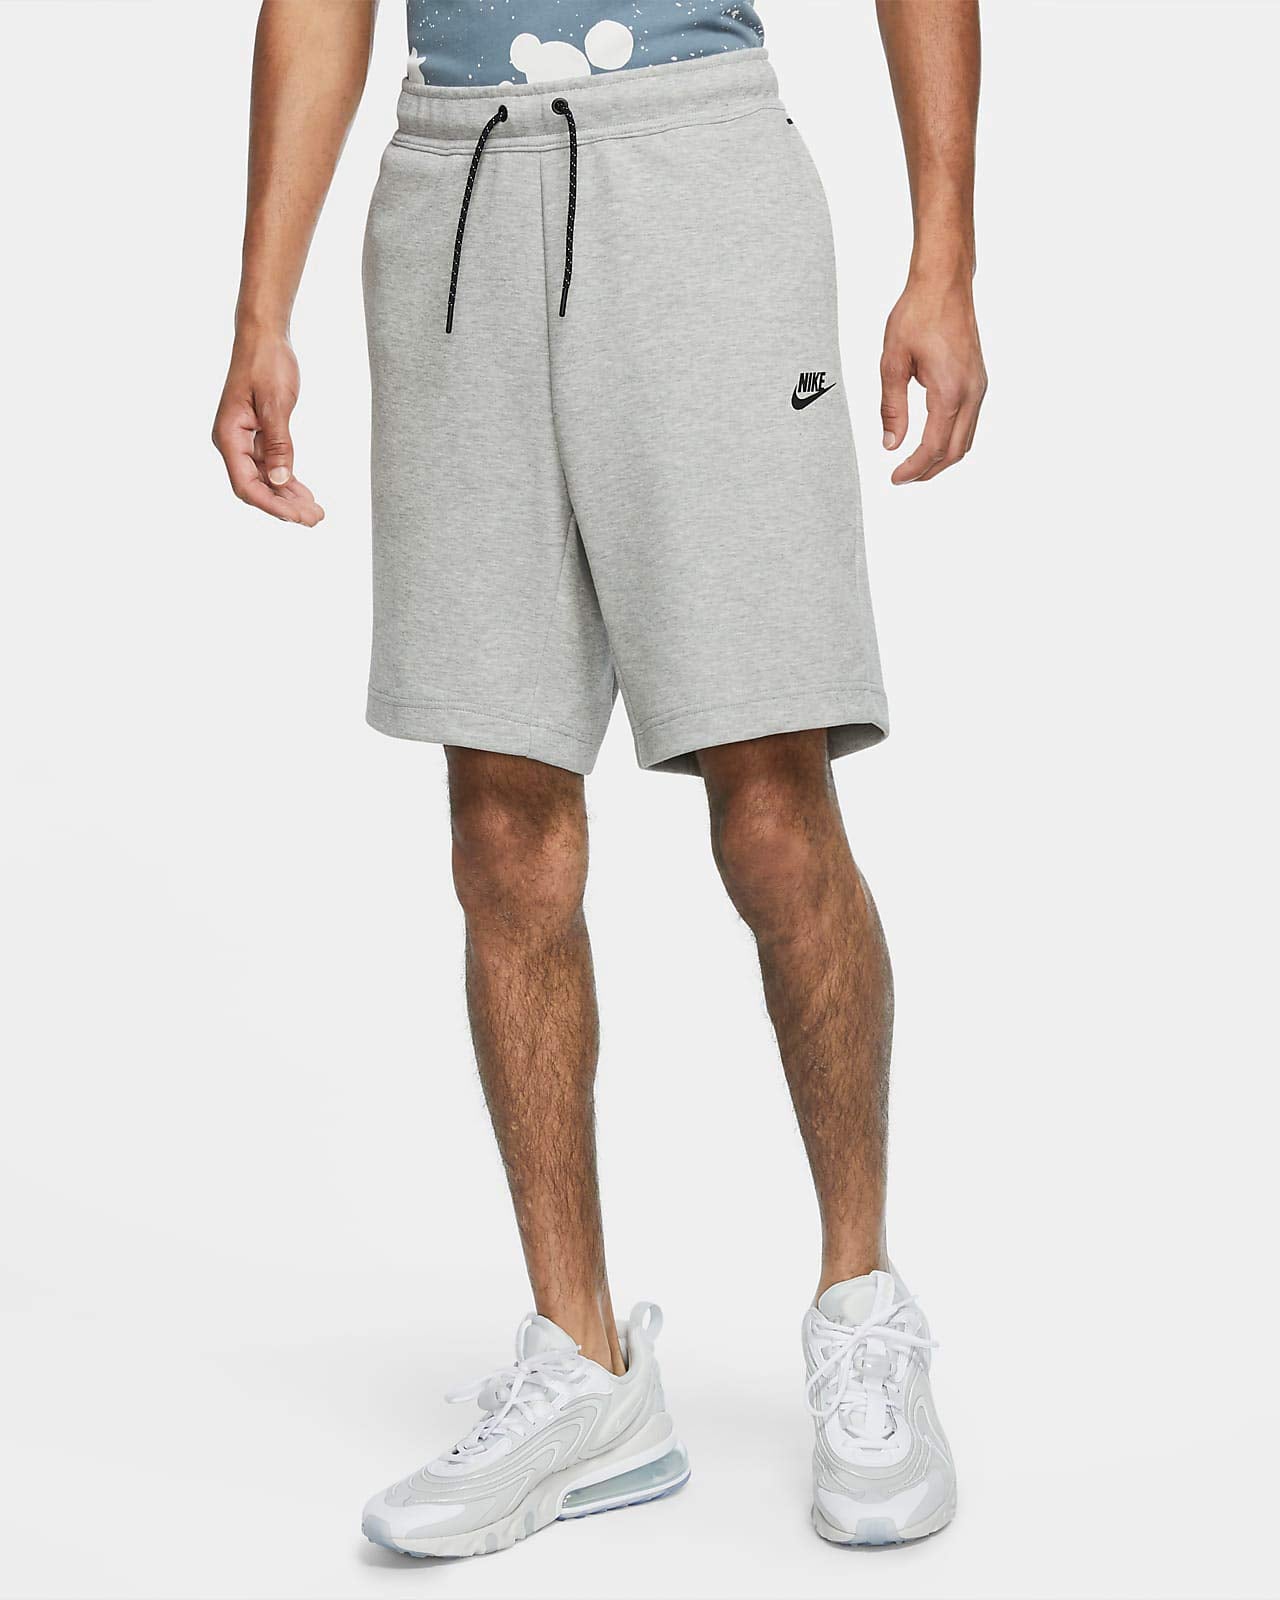 Nike Men's Tech Fleece Shorts - Sneakermaniany